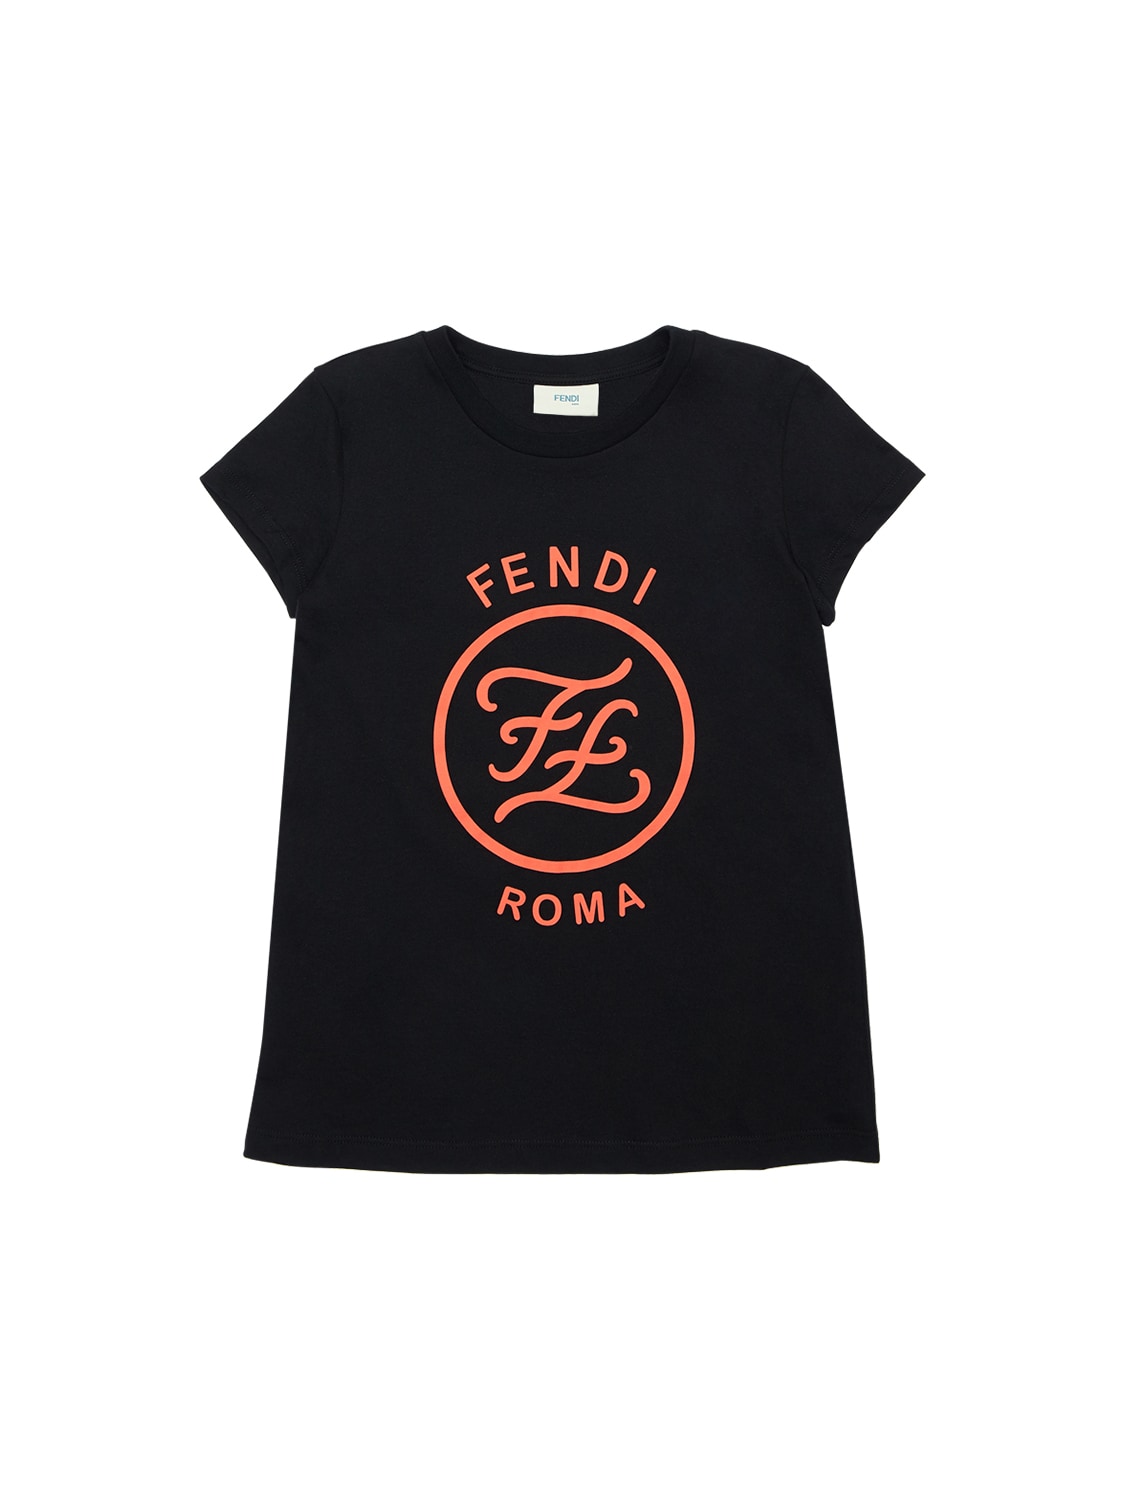 Fendi Kids' Rubberized Logo Cotton Jersey T-shirt In Black